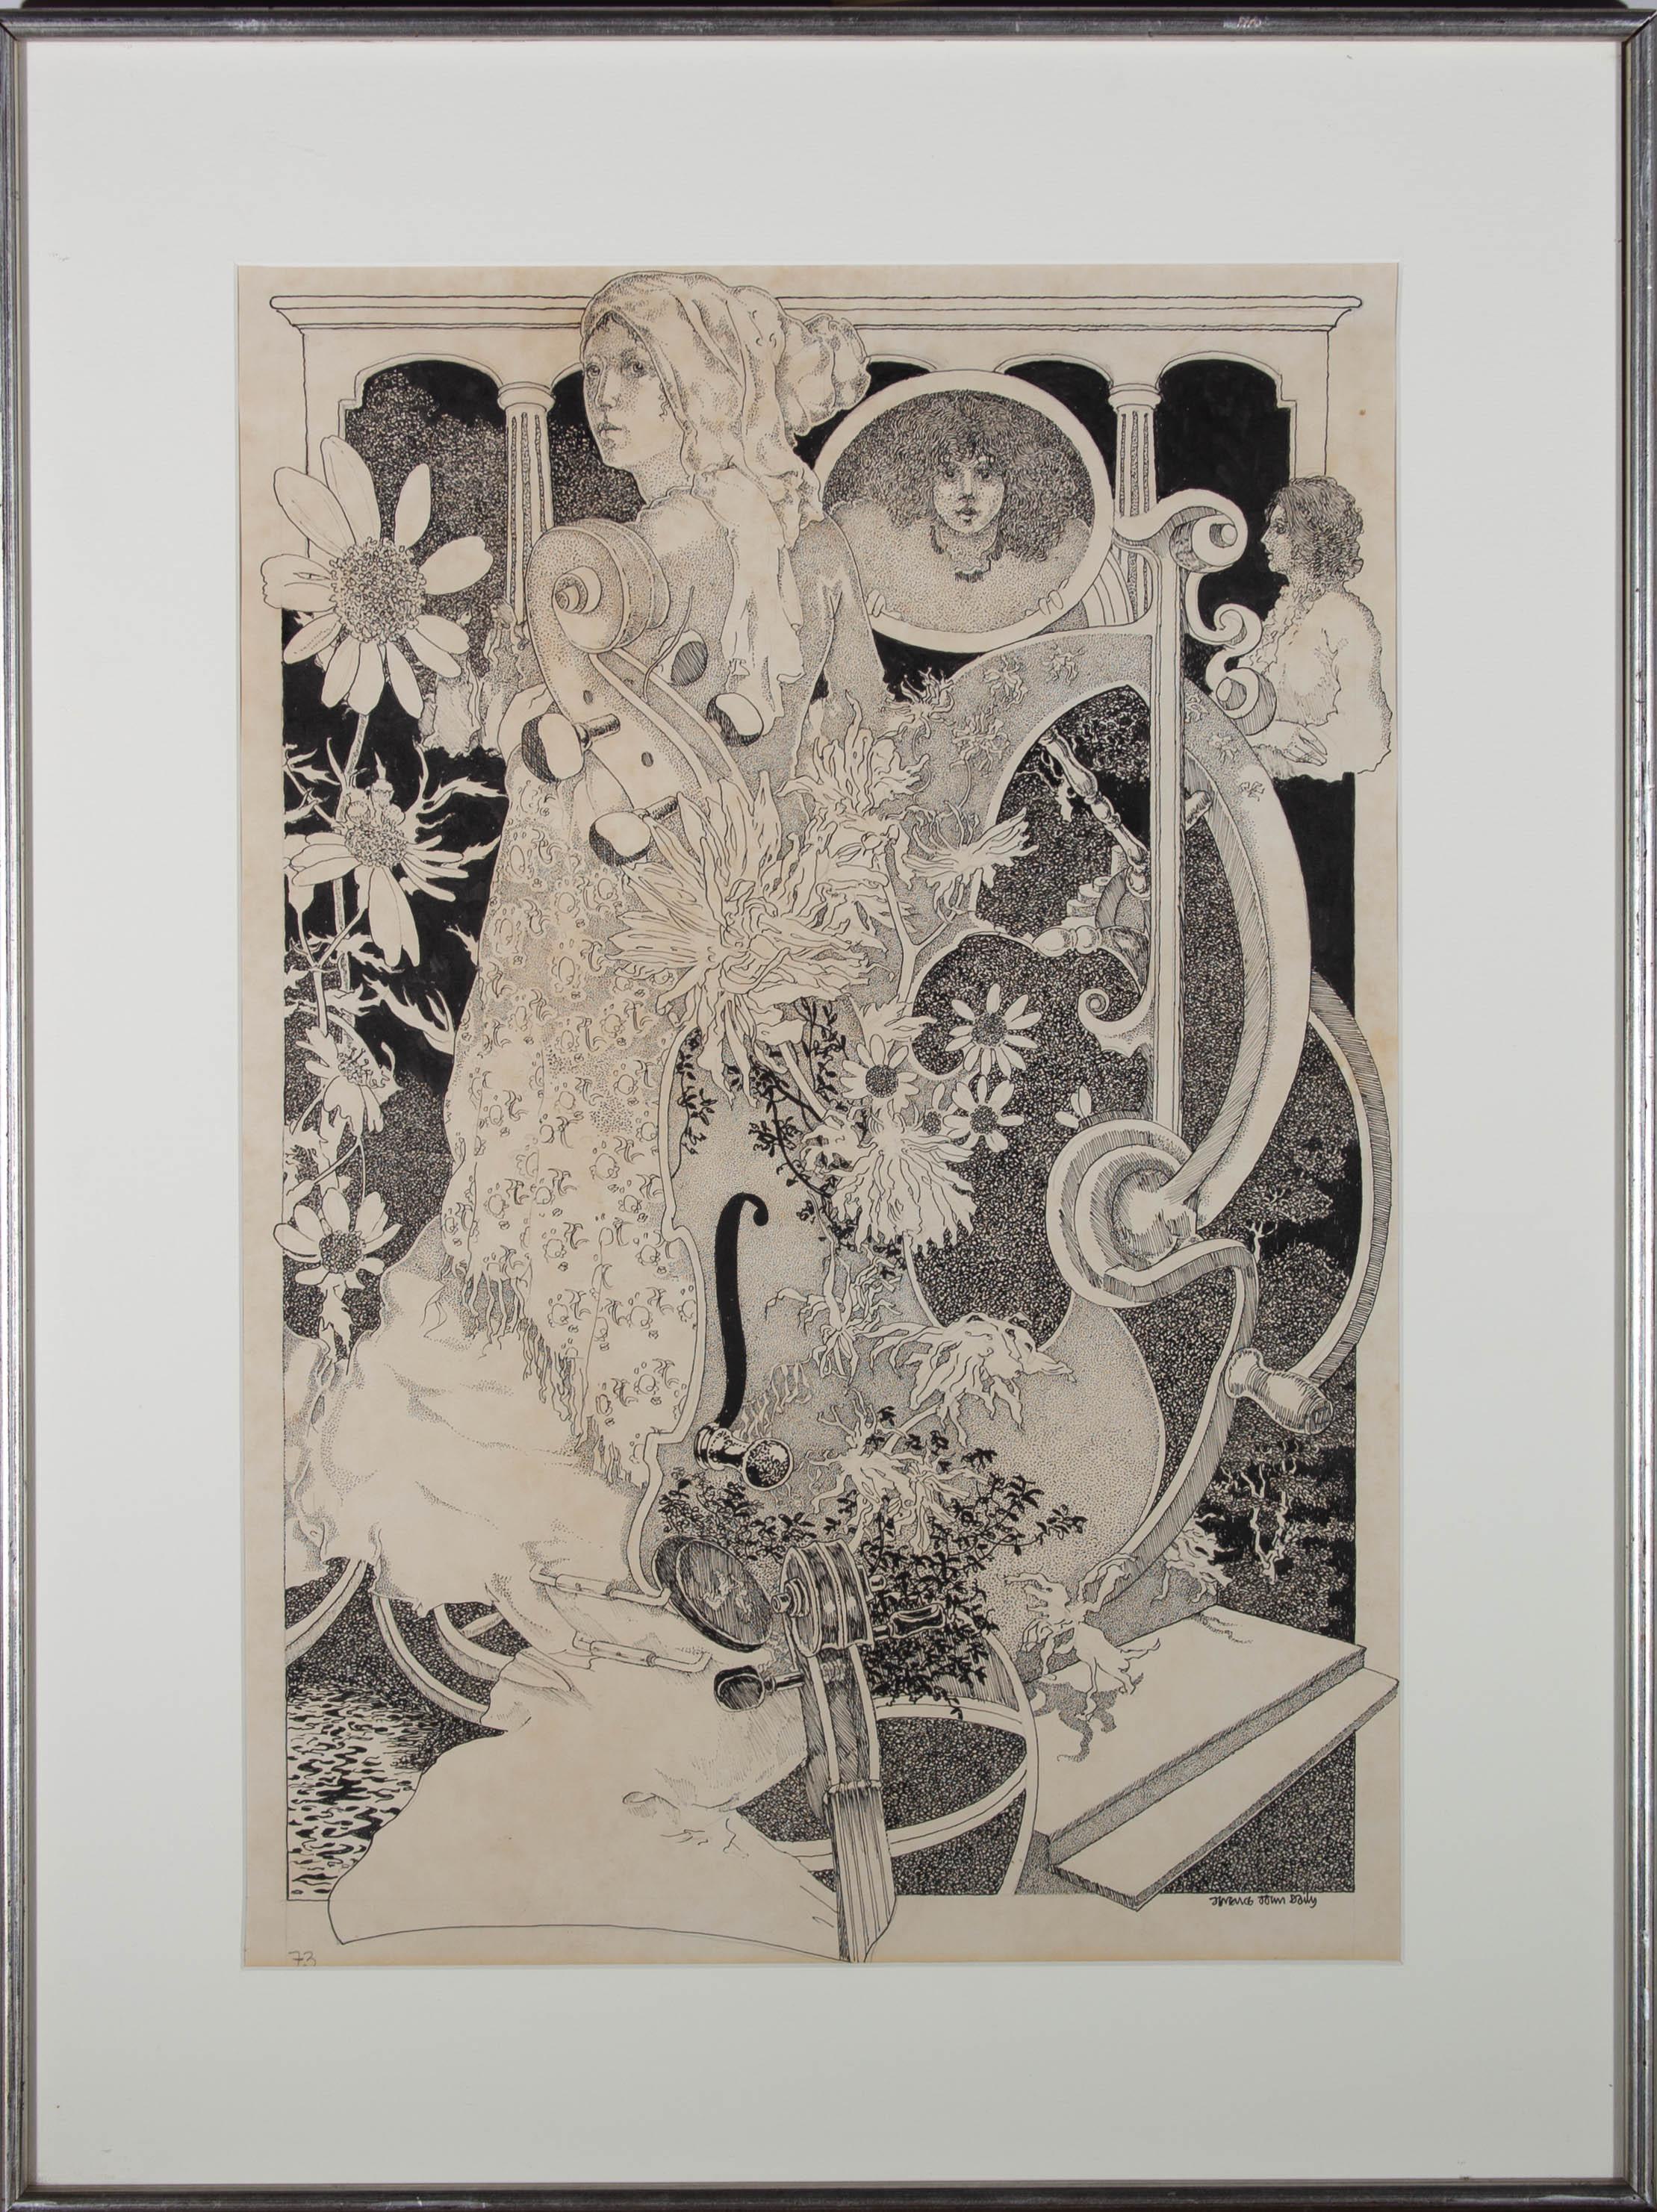 Un dessin à la plume et à l'encre merveilleusement lyrique des années 1970, montrant un amalgame surréaliste de violons, de fleurs et de trois femmes. Le dessin est certainement influencé par des artistes comme Aubrey Beardsley. L'artiste a signé